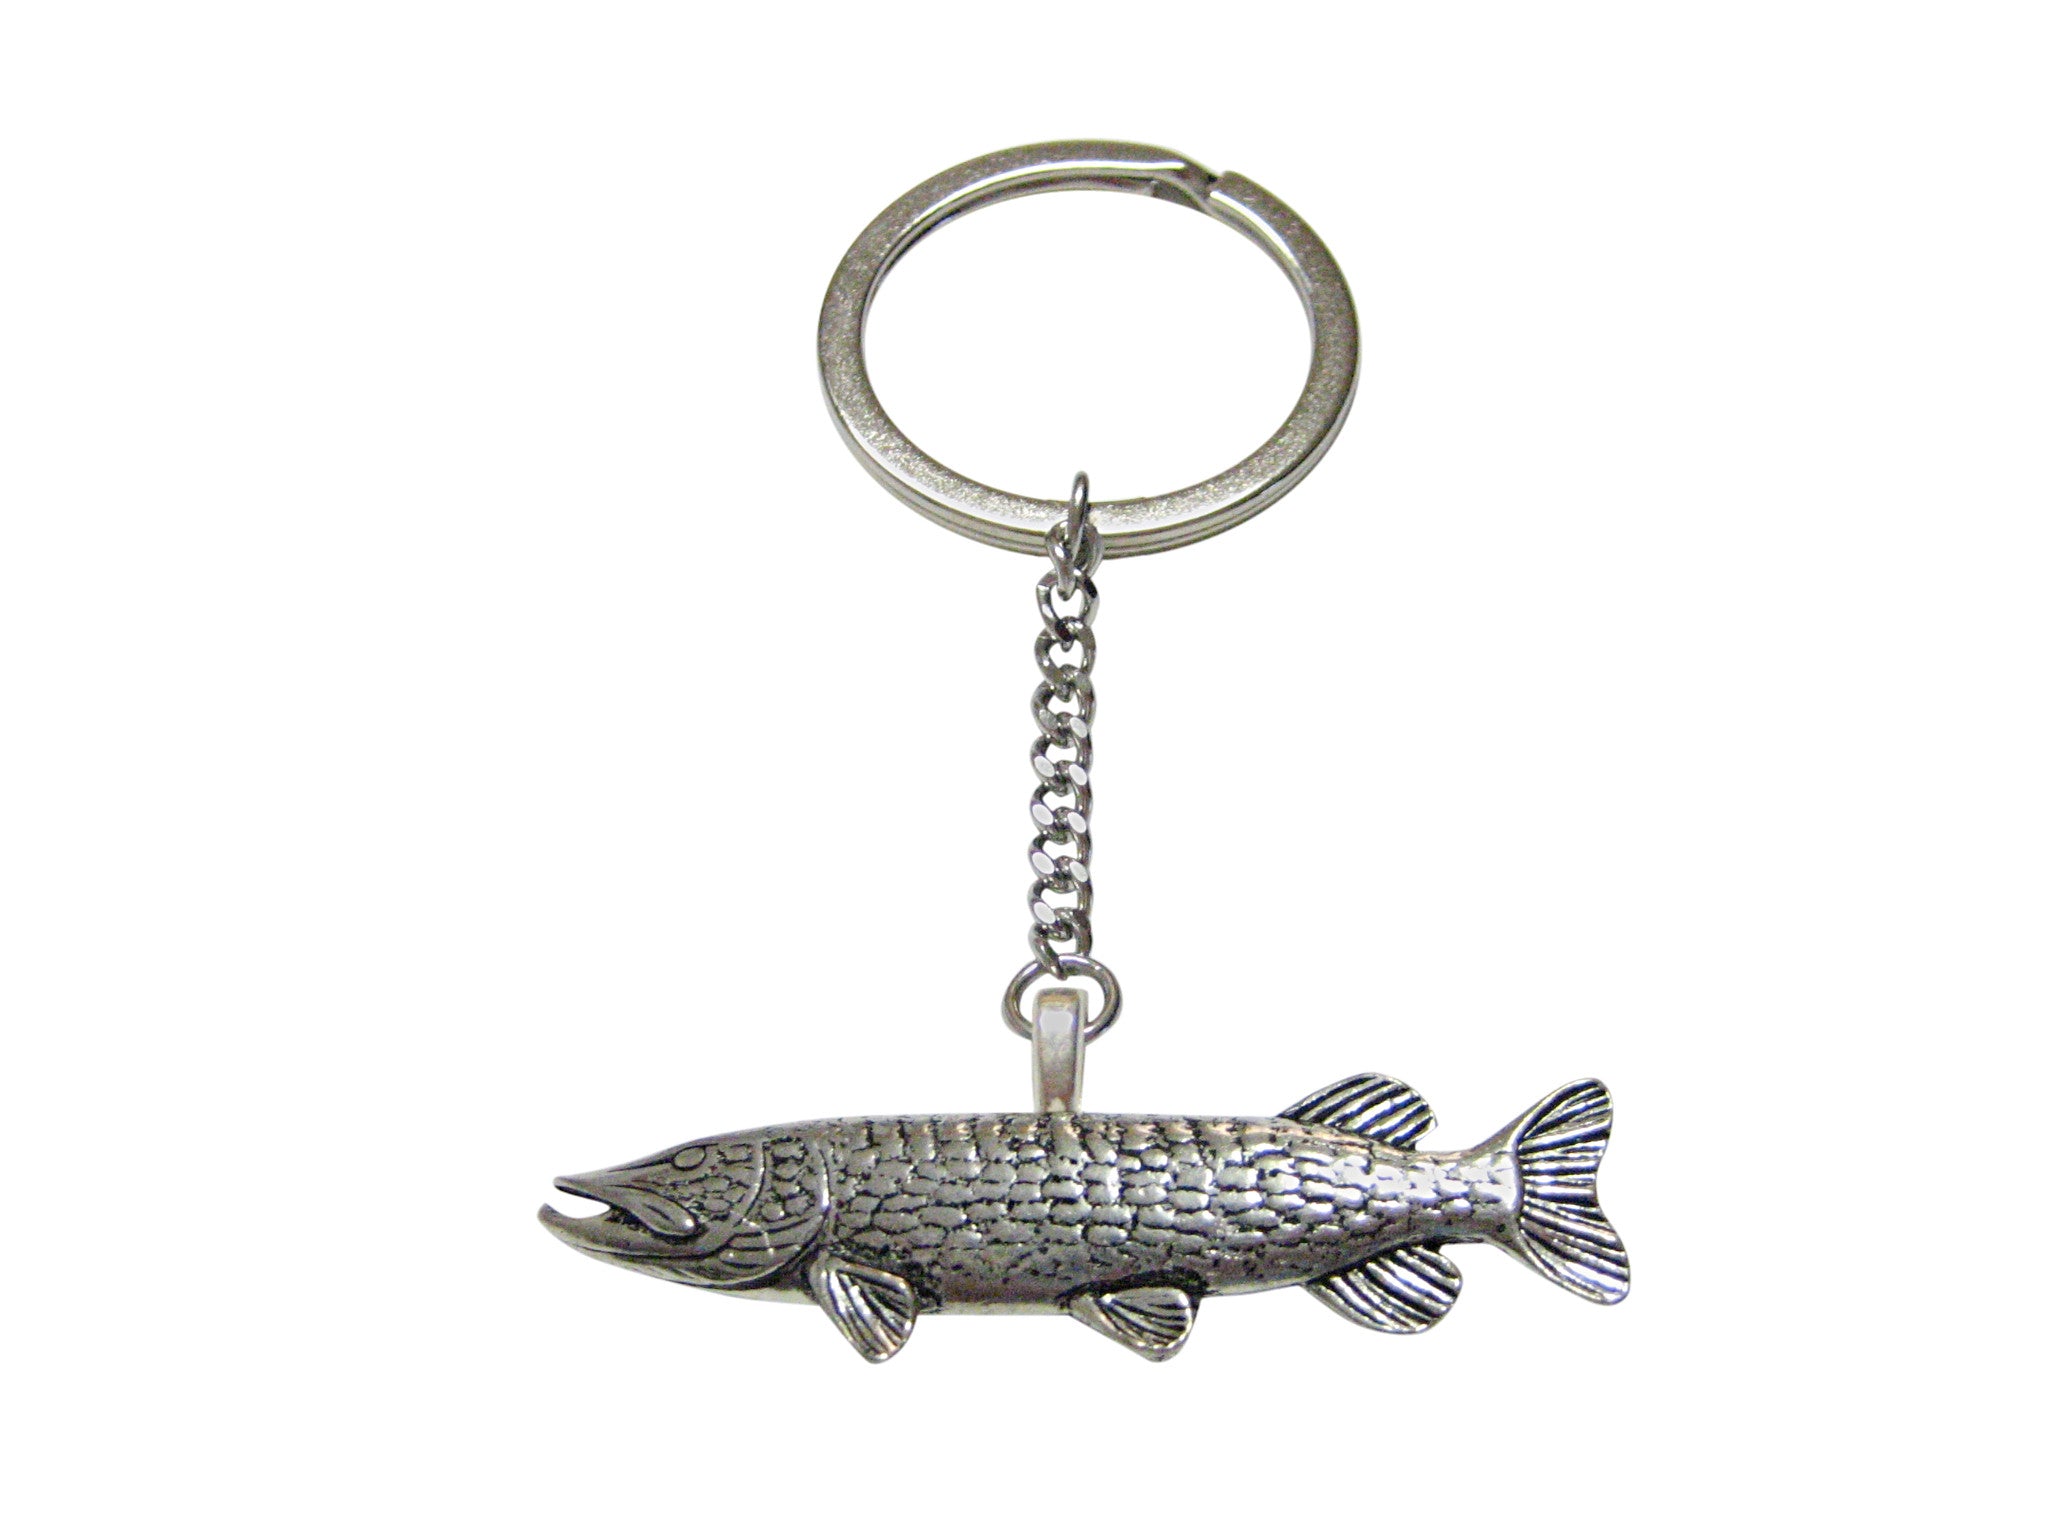 Pike Fish Pendant Keychain